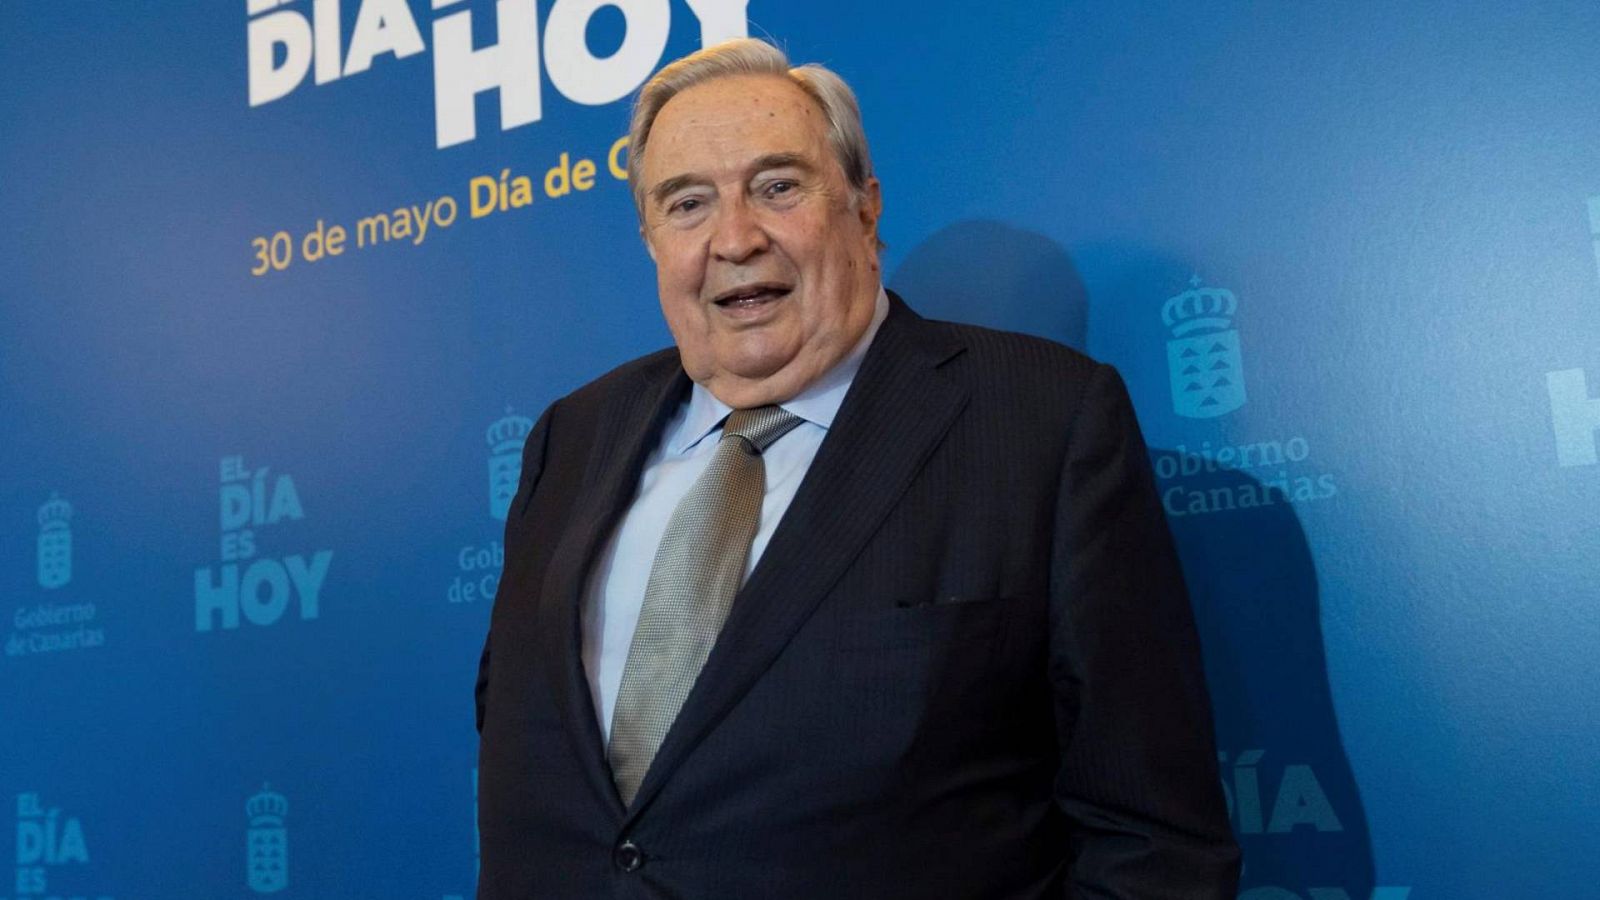 Muere Jerónimo Saavedra, expresidente de Canarias y exministro de Educación